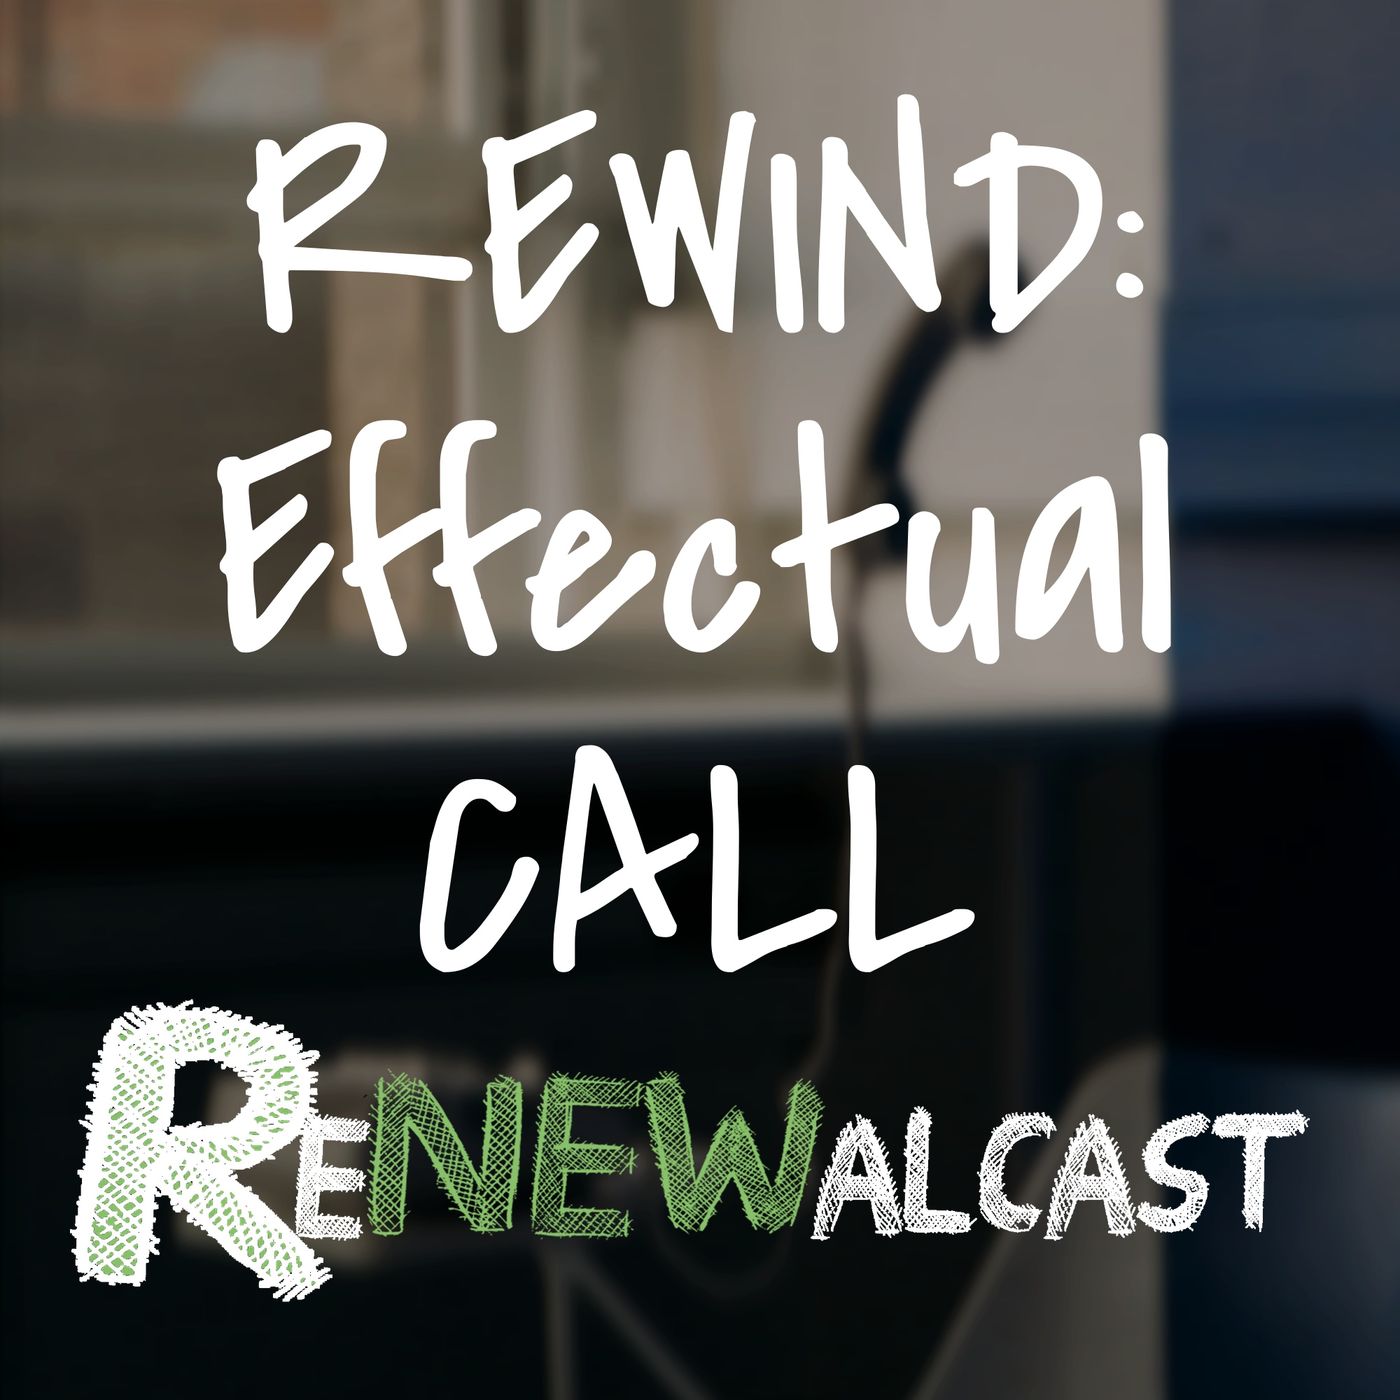 REWIND: EFFECTUAL CALL